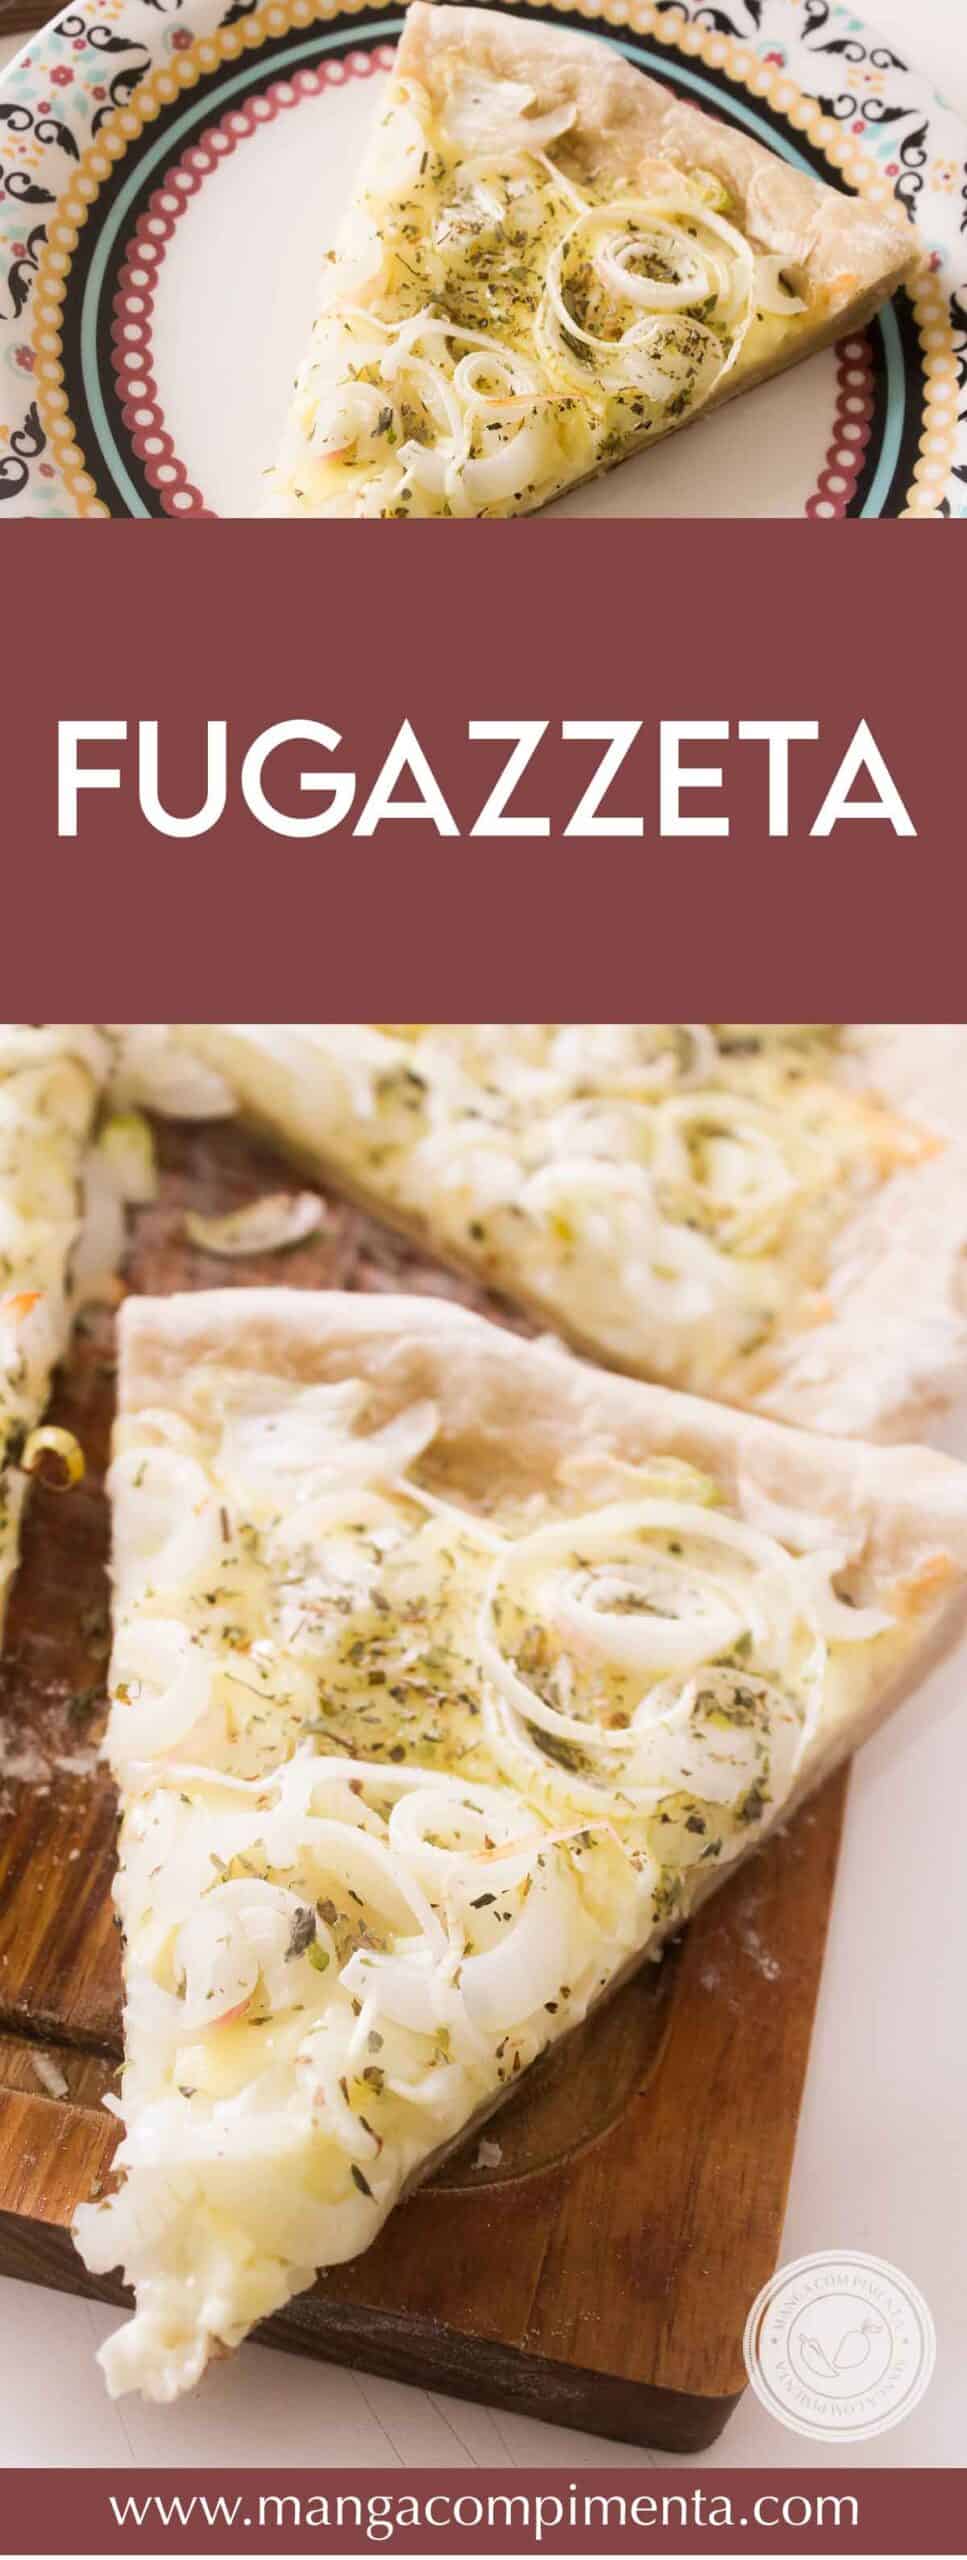 Receita de Fugazzeta - uma pizza argentina que leva muito queijo e cebola no seu preparo! 